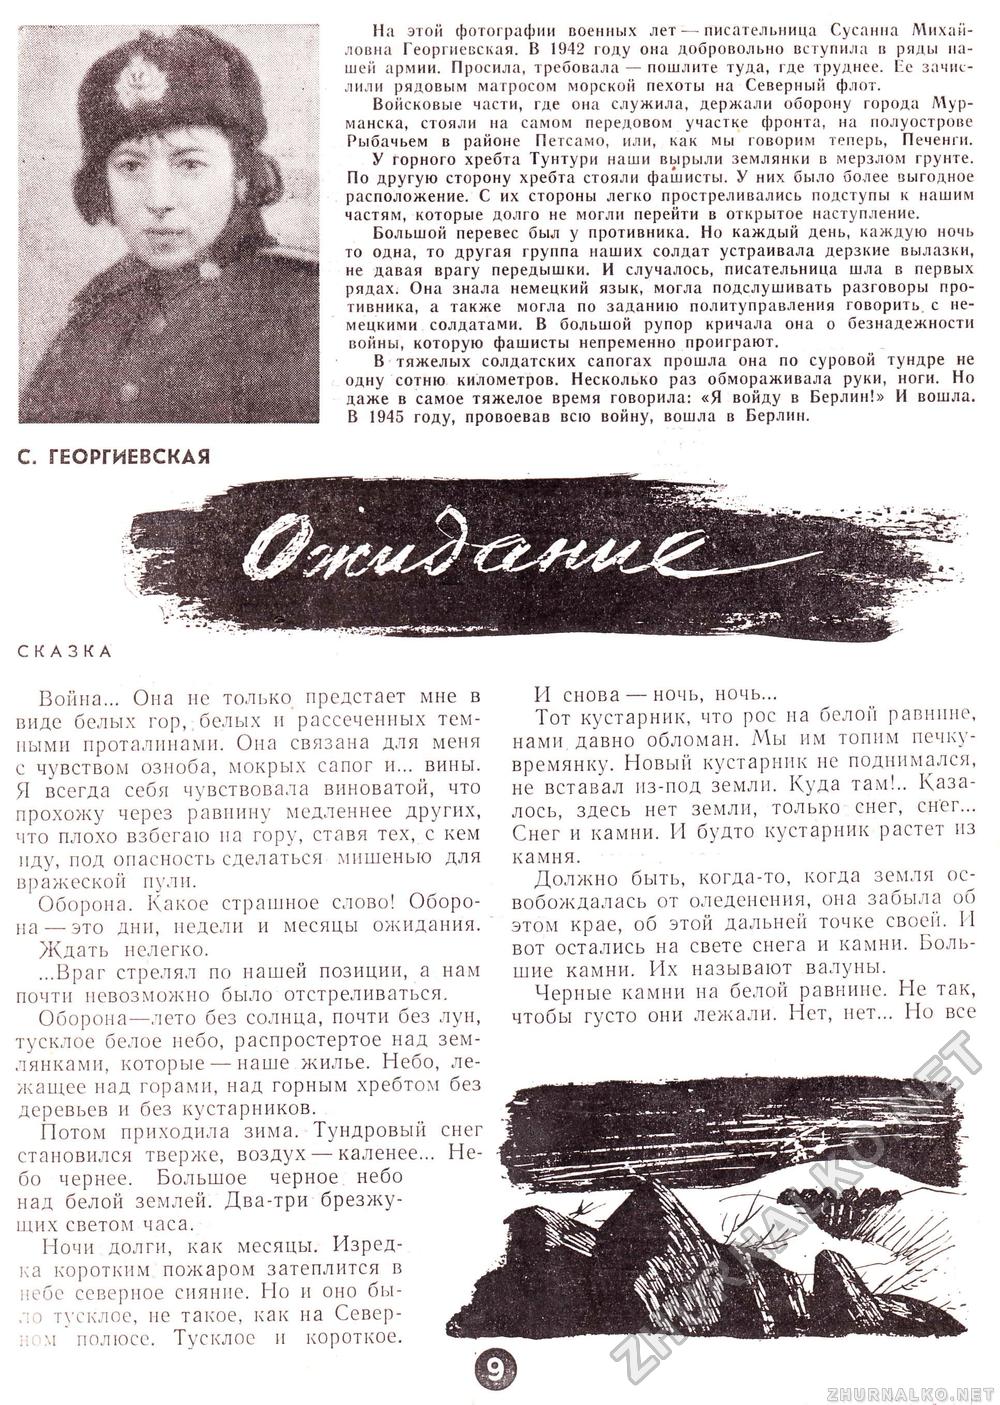 Пионер 1968-02, страница 11